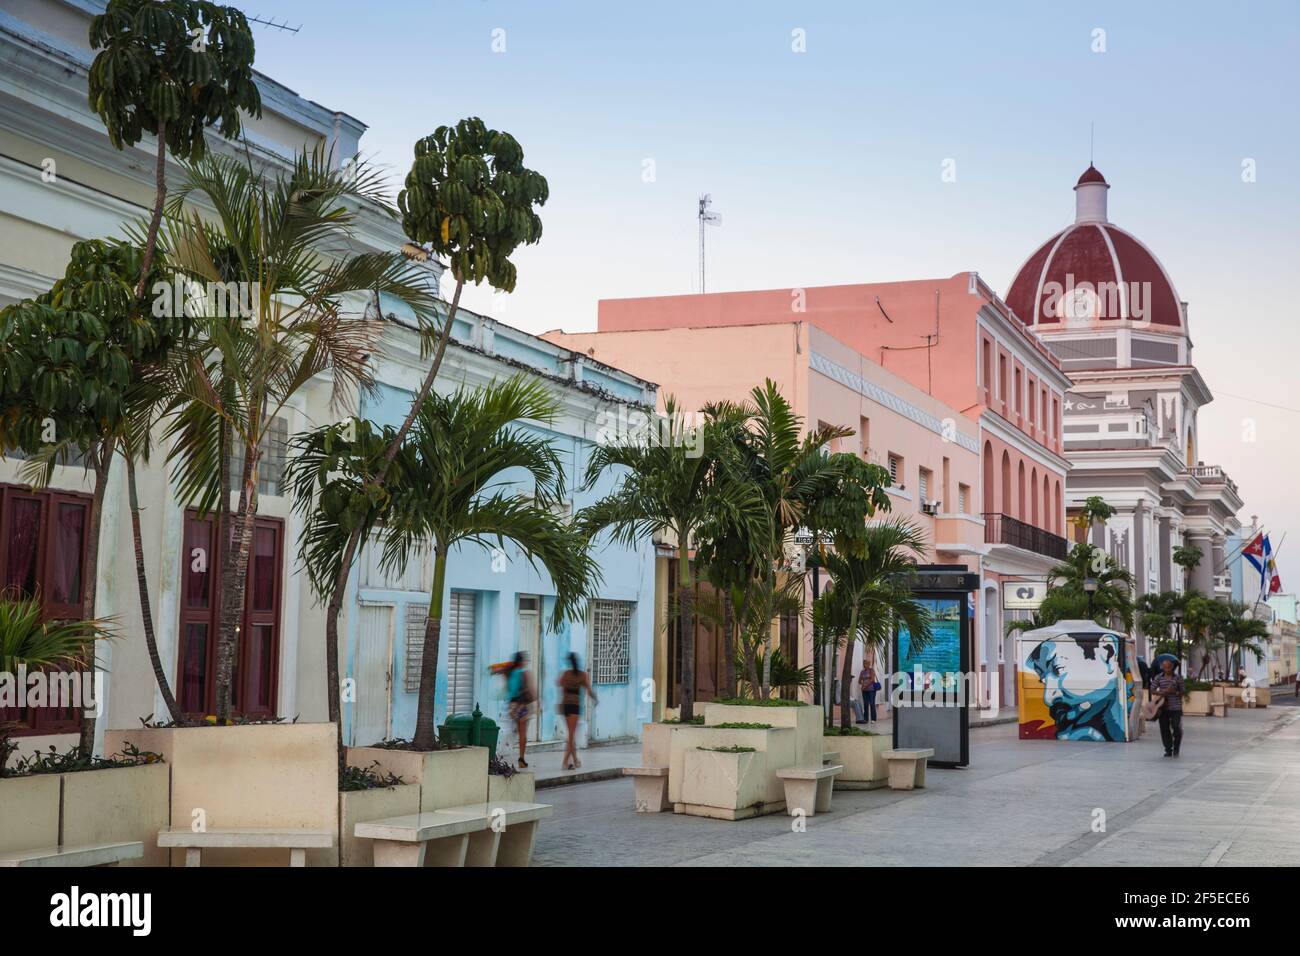 Cuba, Cienfuegos, Pedestrian street leading to Palacio de Gobierno - City Hall Stock Photo